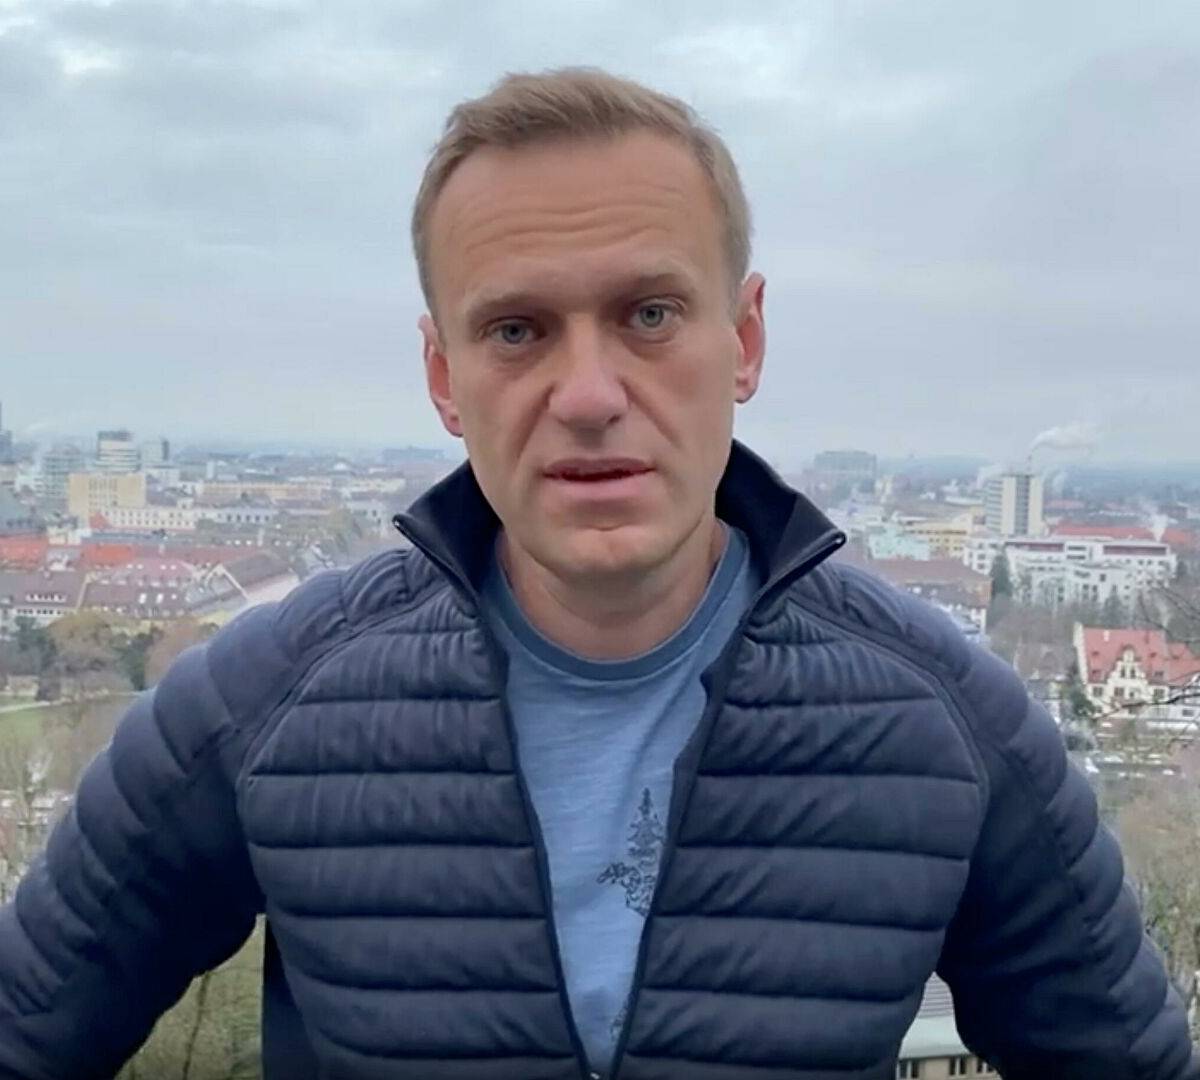 Голосовать нельзя бойкотировать: как проваливаются проекты Навального